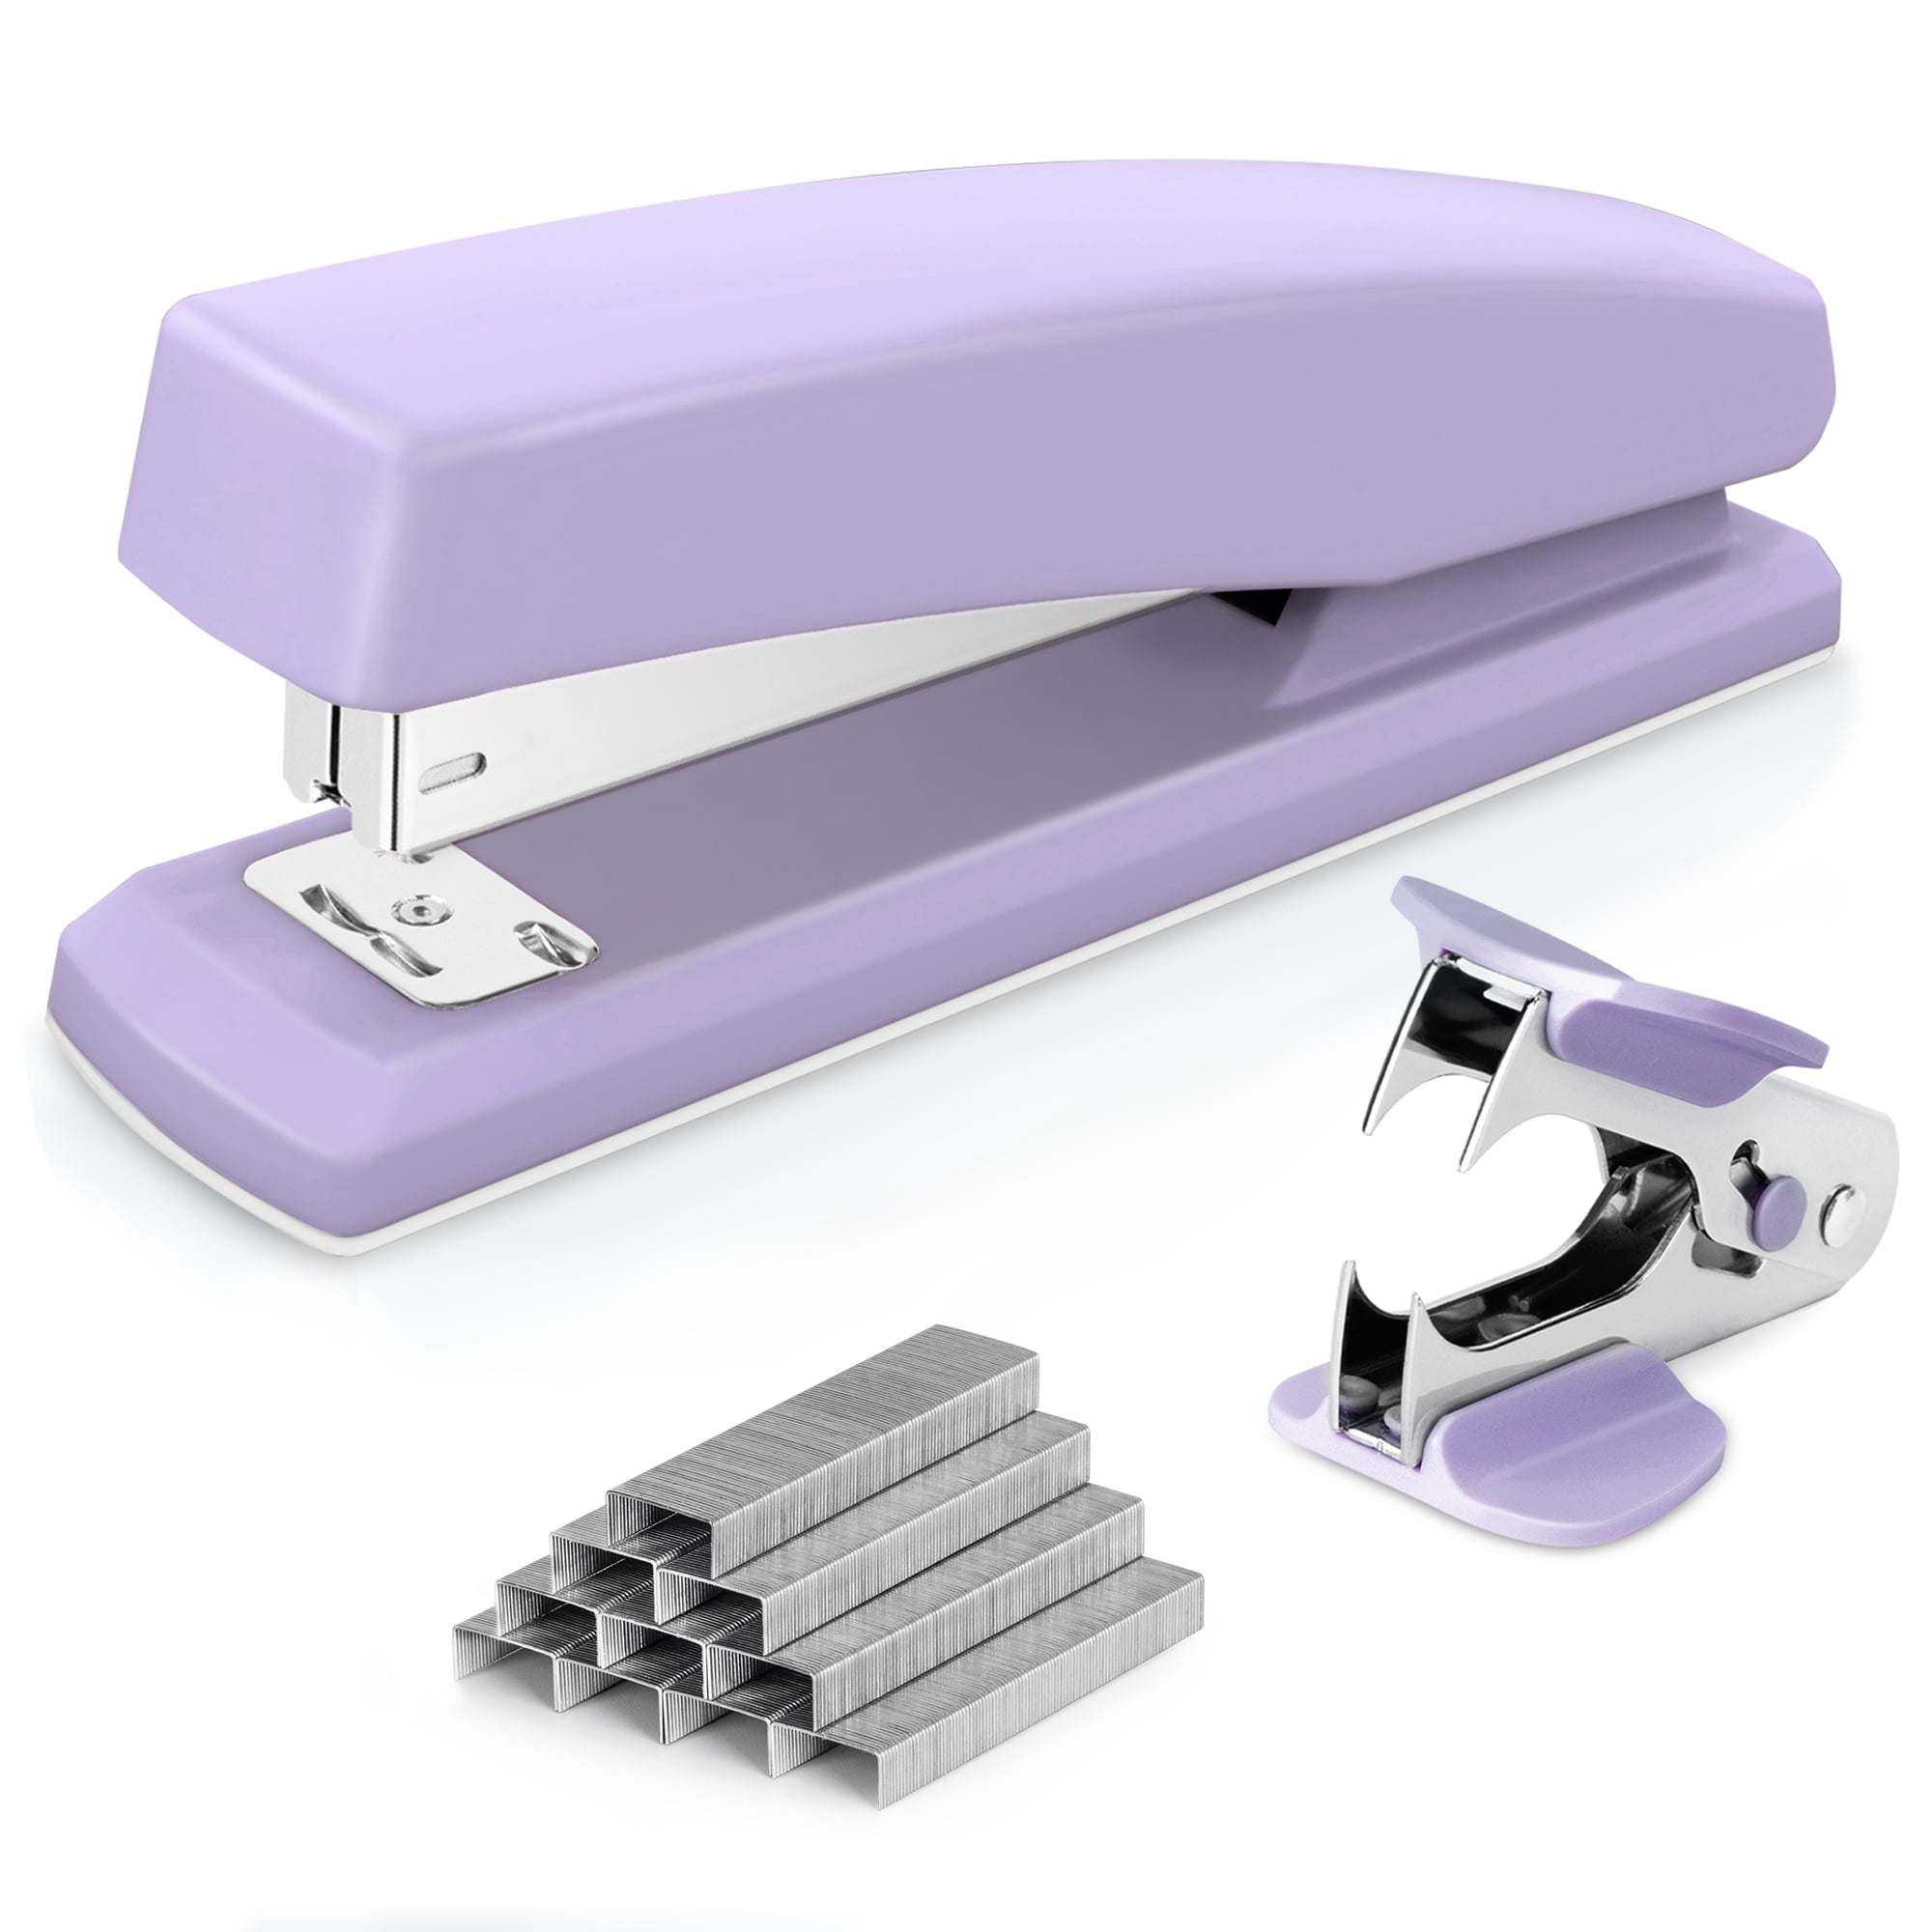 PaperPro Translucent Compact Stapler, Purple - Shop Tools